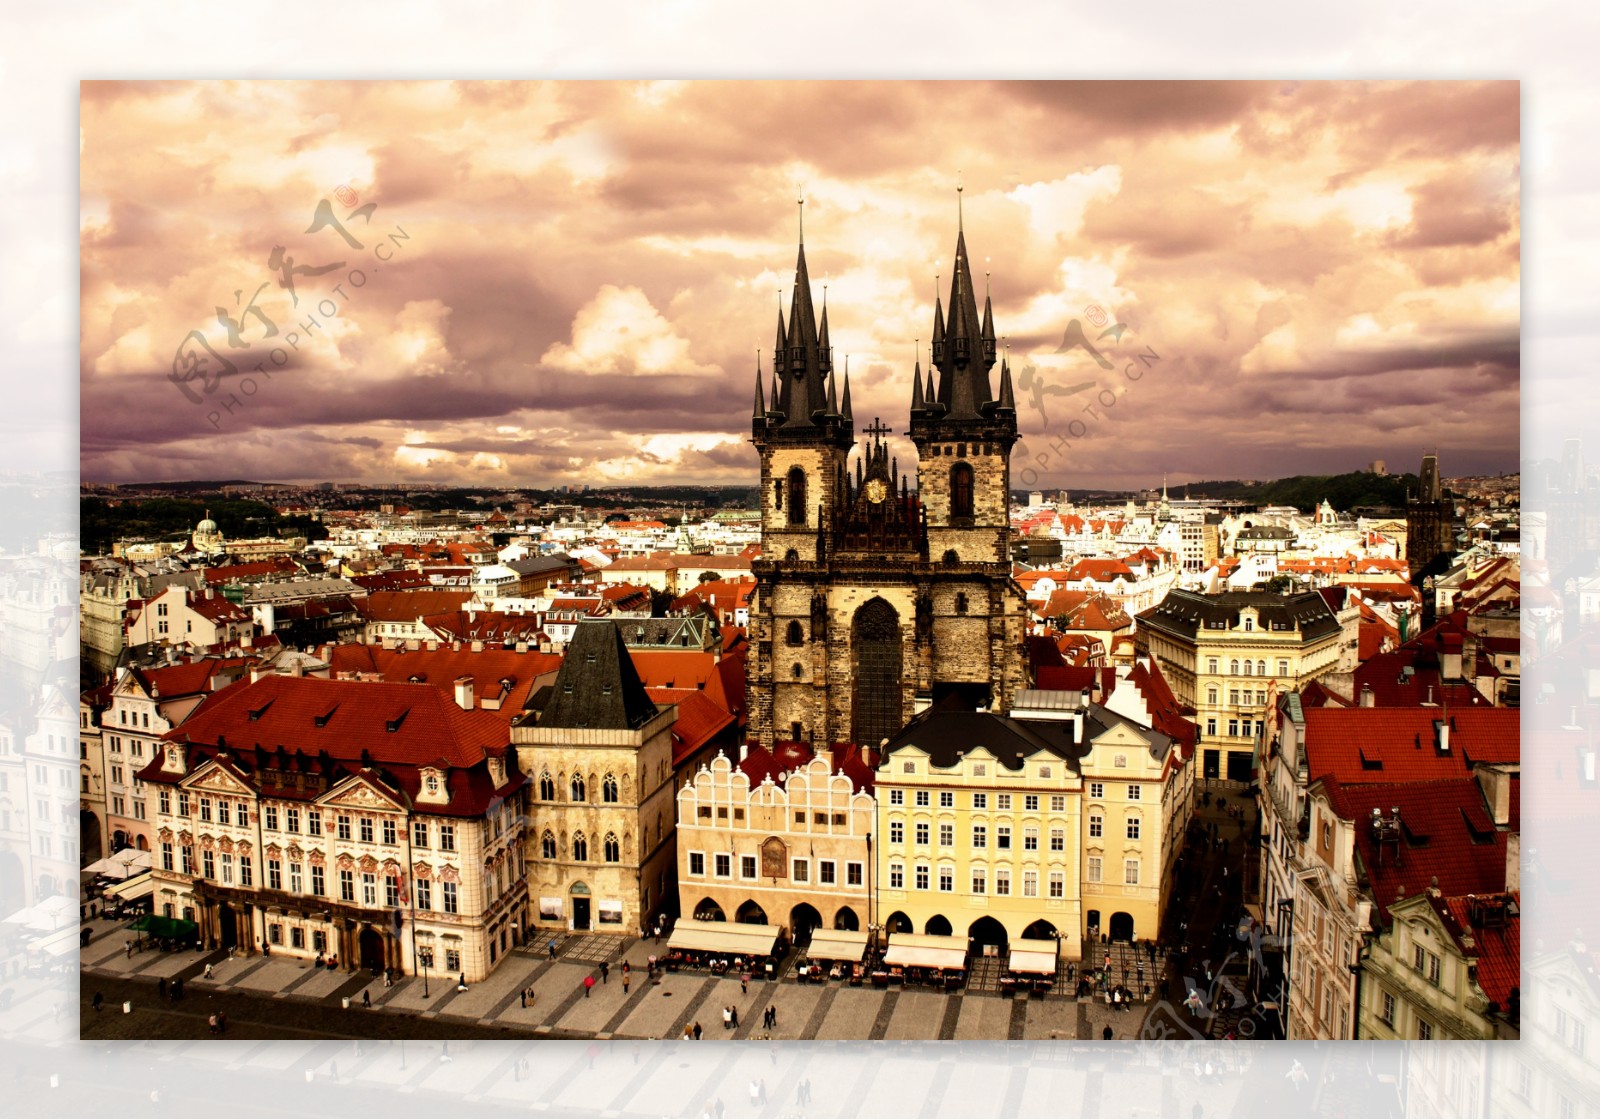 布拉格城堡风景图片